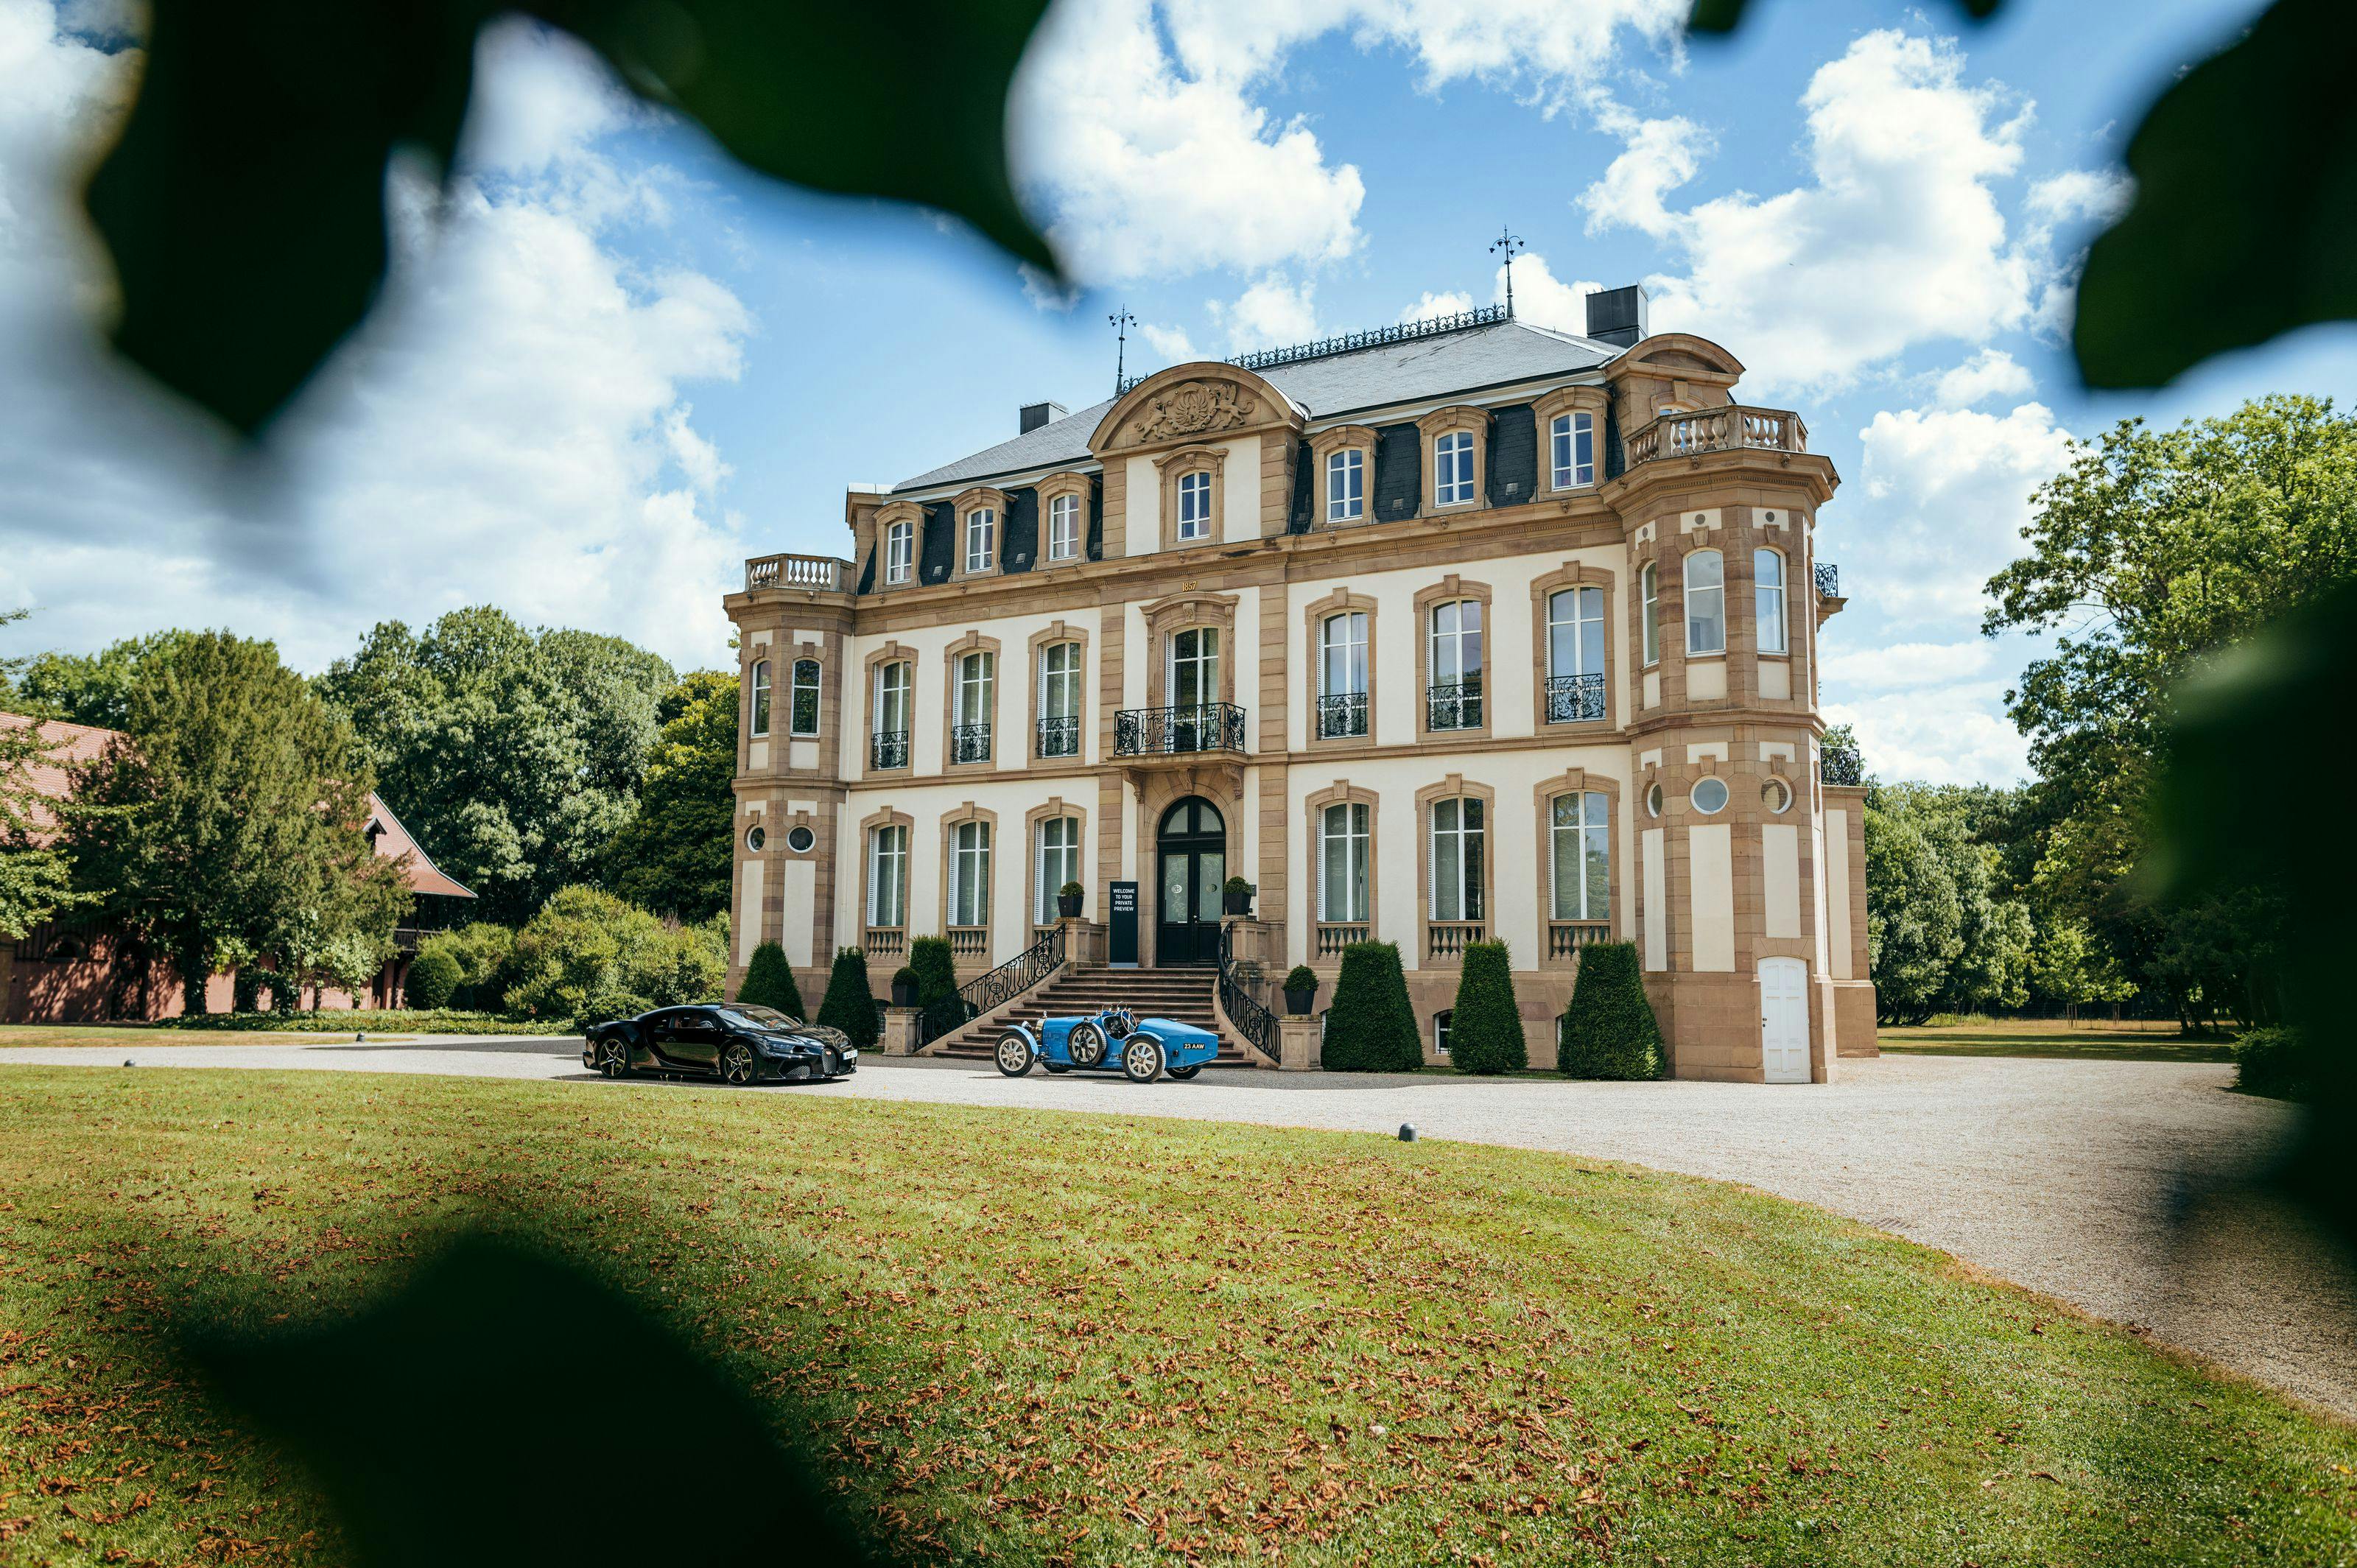 Bugatti empfängt Gäste zu einer unvergesslichen „Nacht im Château“